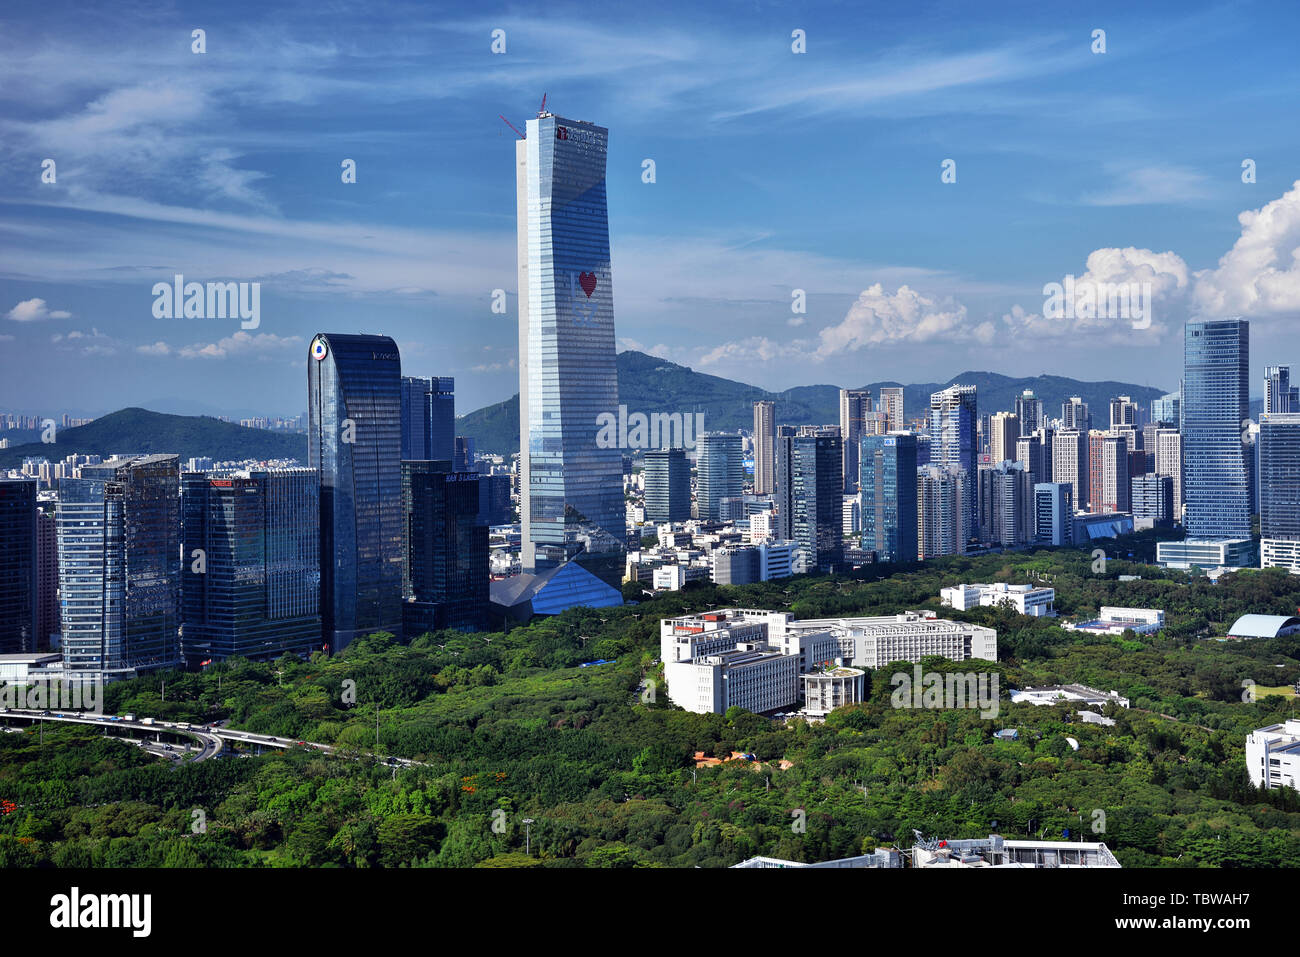 City Scenery of Nanshan, Shenzhen Stock Photo